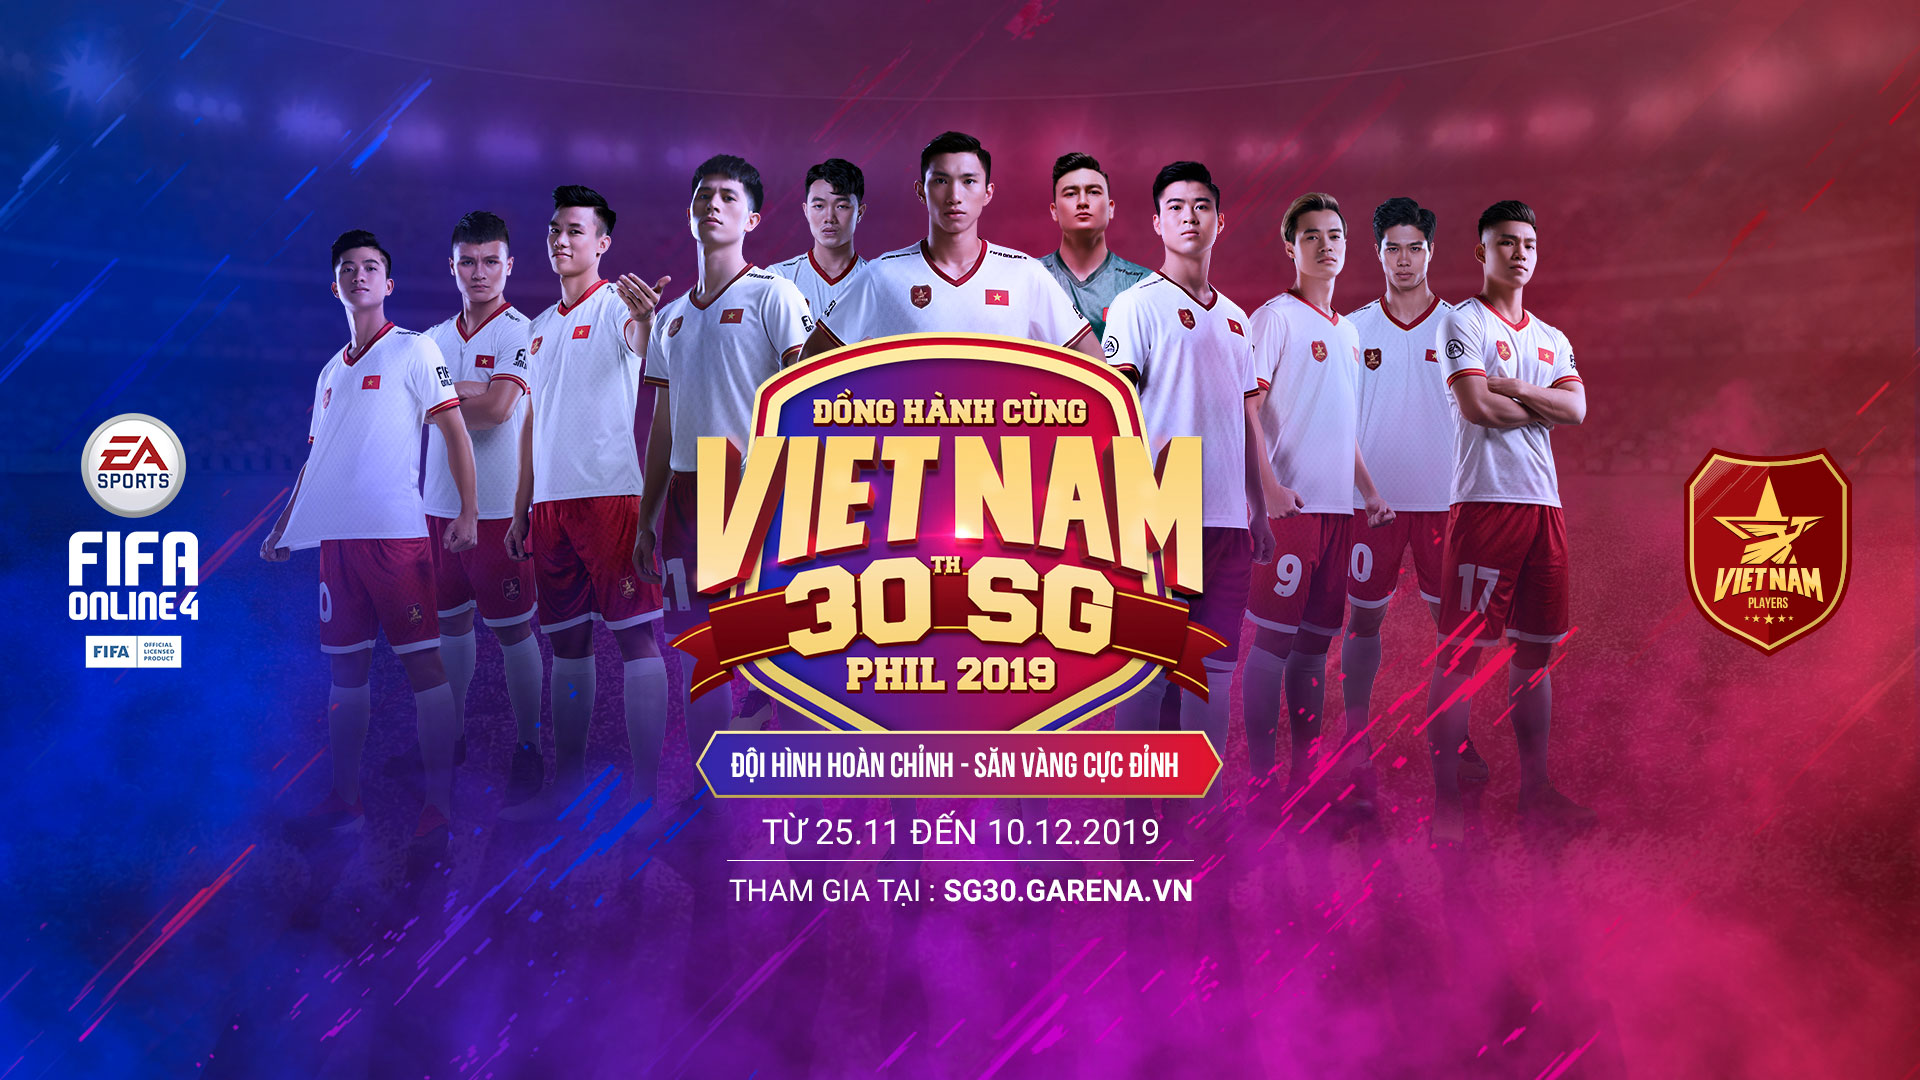 FIFA Online 4 Việt Nam  HƯỚNG DẪN KHẮC PHỤC LỖI KHI ĐĂNG NHẬP VÀO FIFA  ONLINE 4